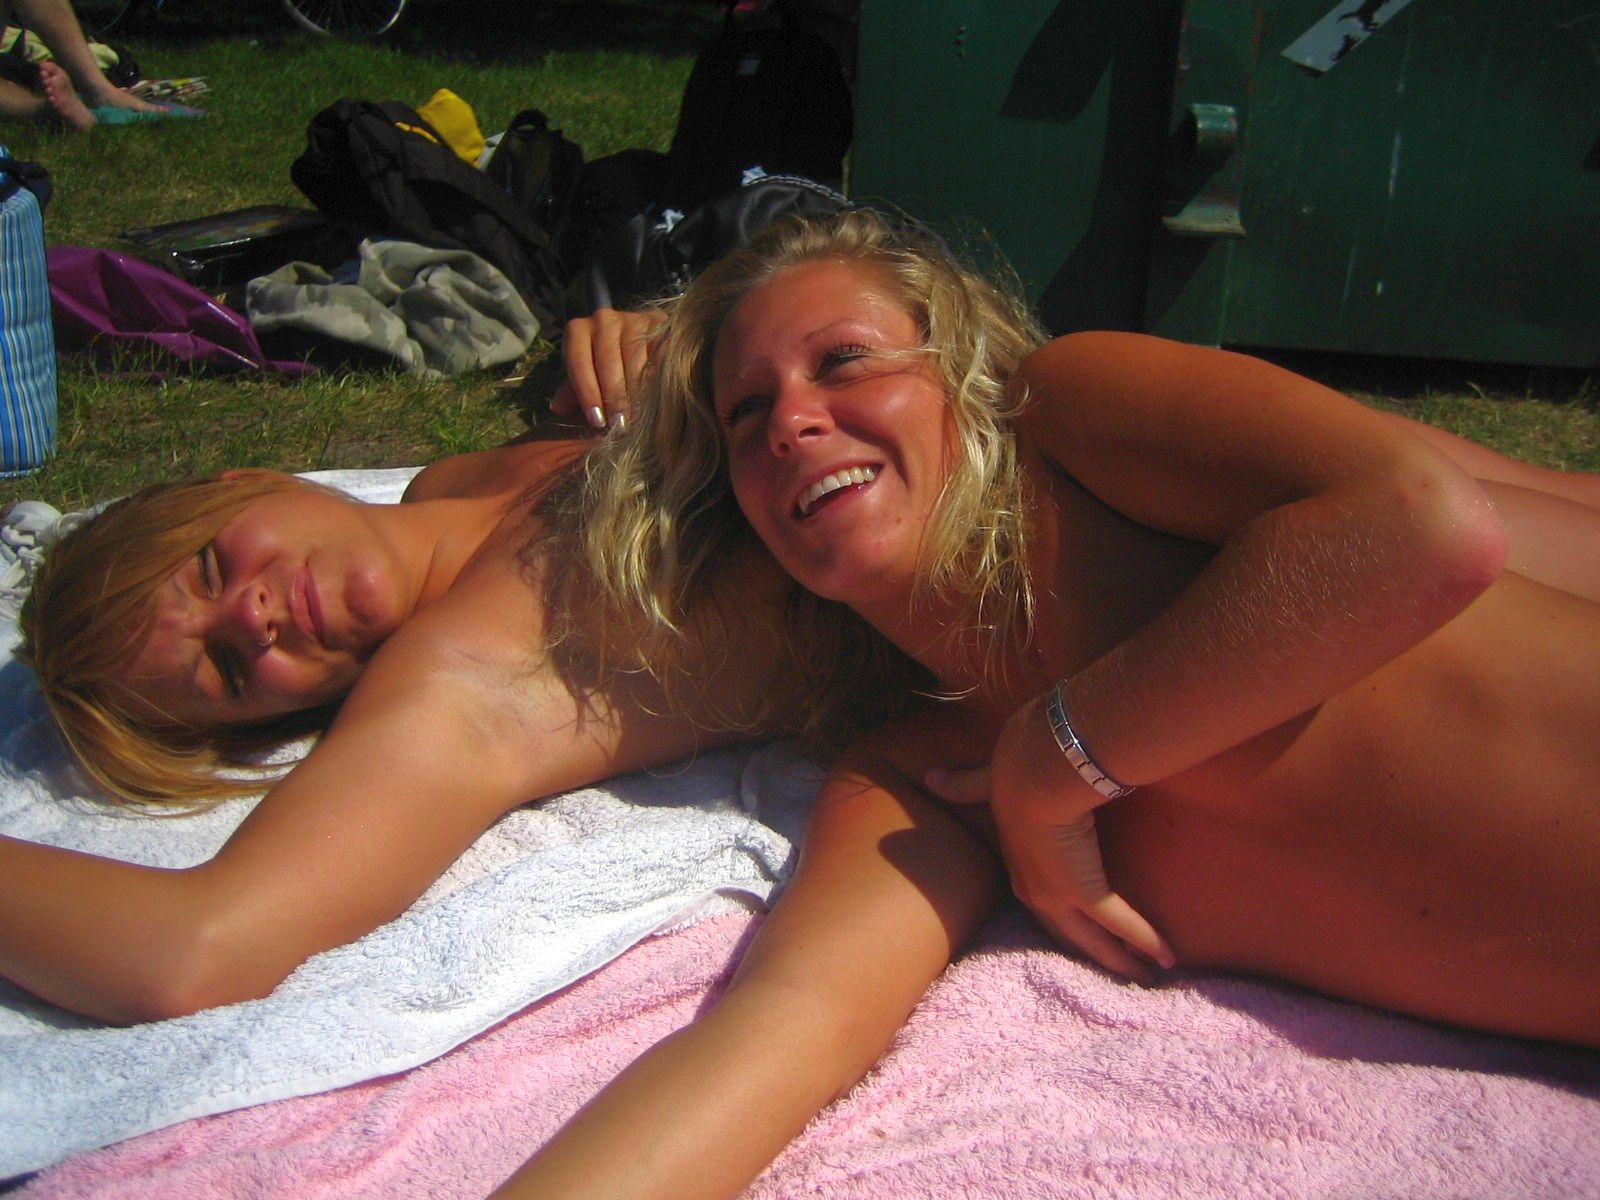 [European+Public+Nudity+Fun+From+Sweden+www.GutterUncensoredPlus.com+058.jpg]